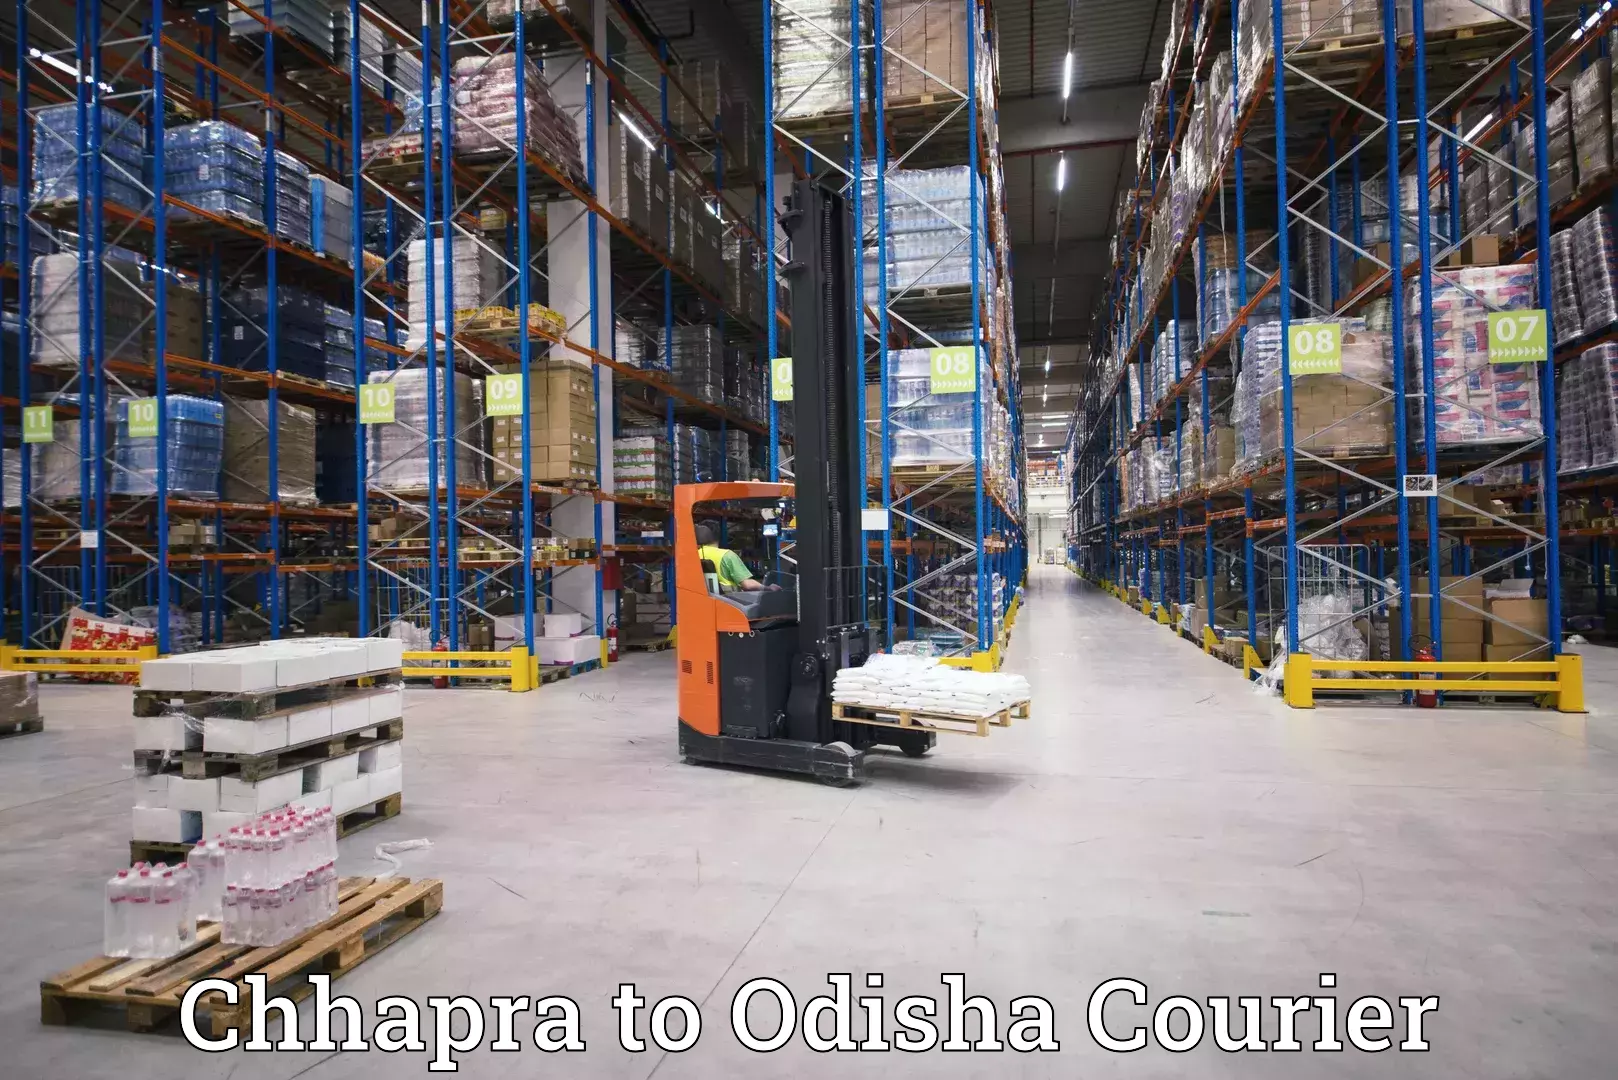 24-hour courier service Chhapra to Daspalla